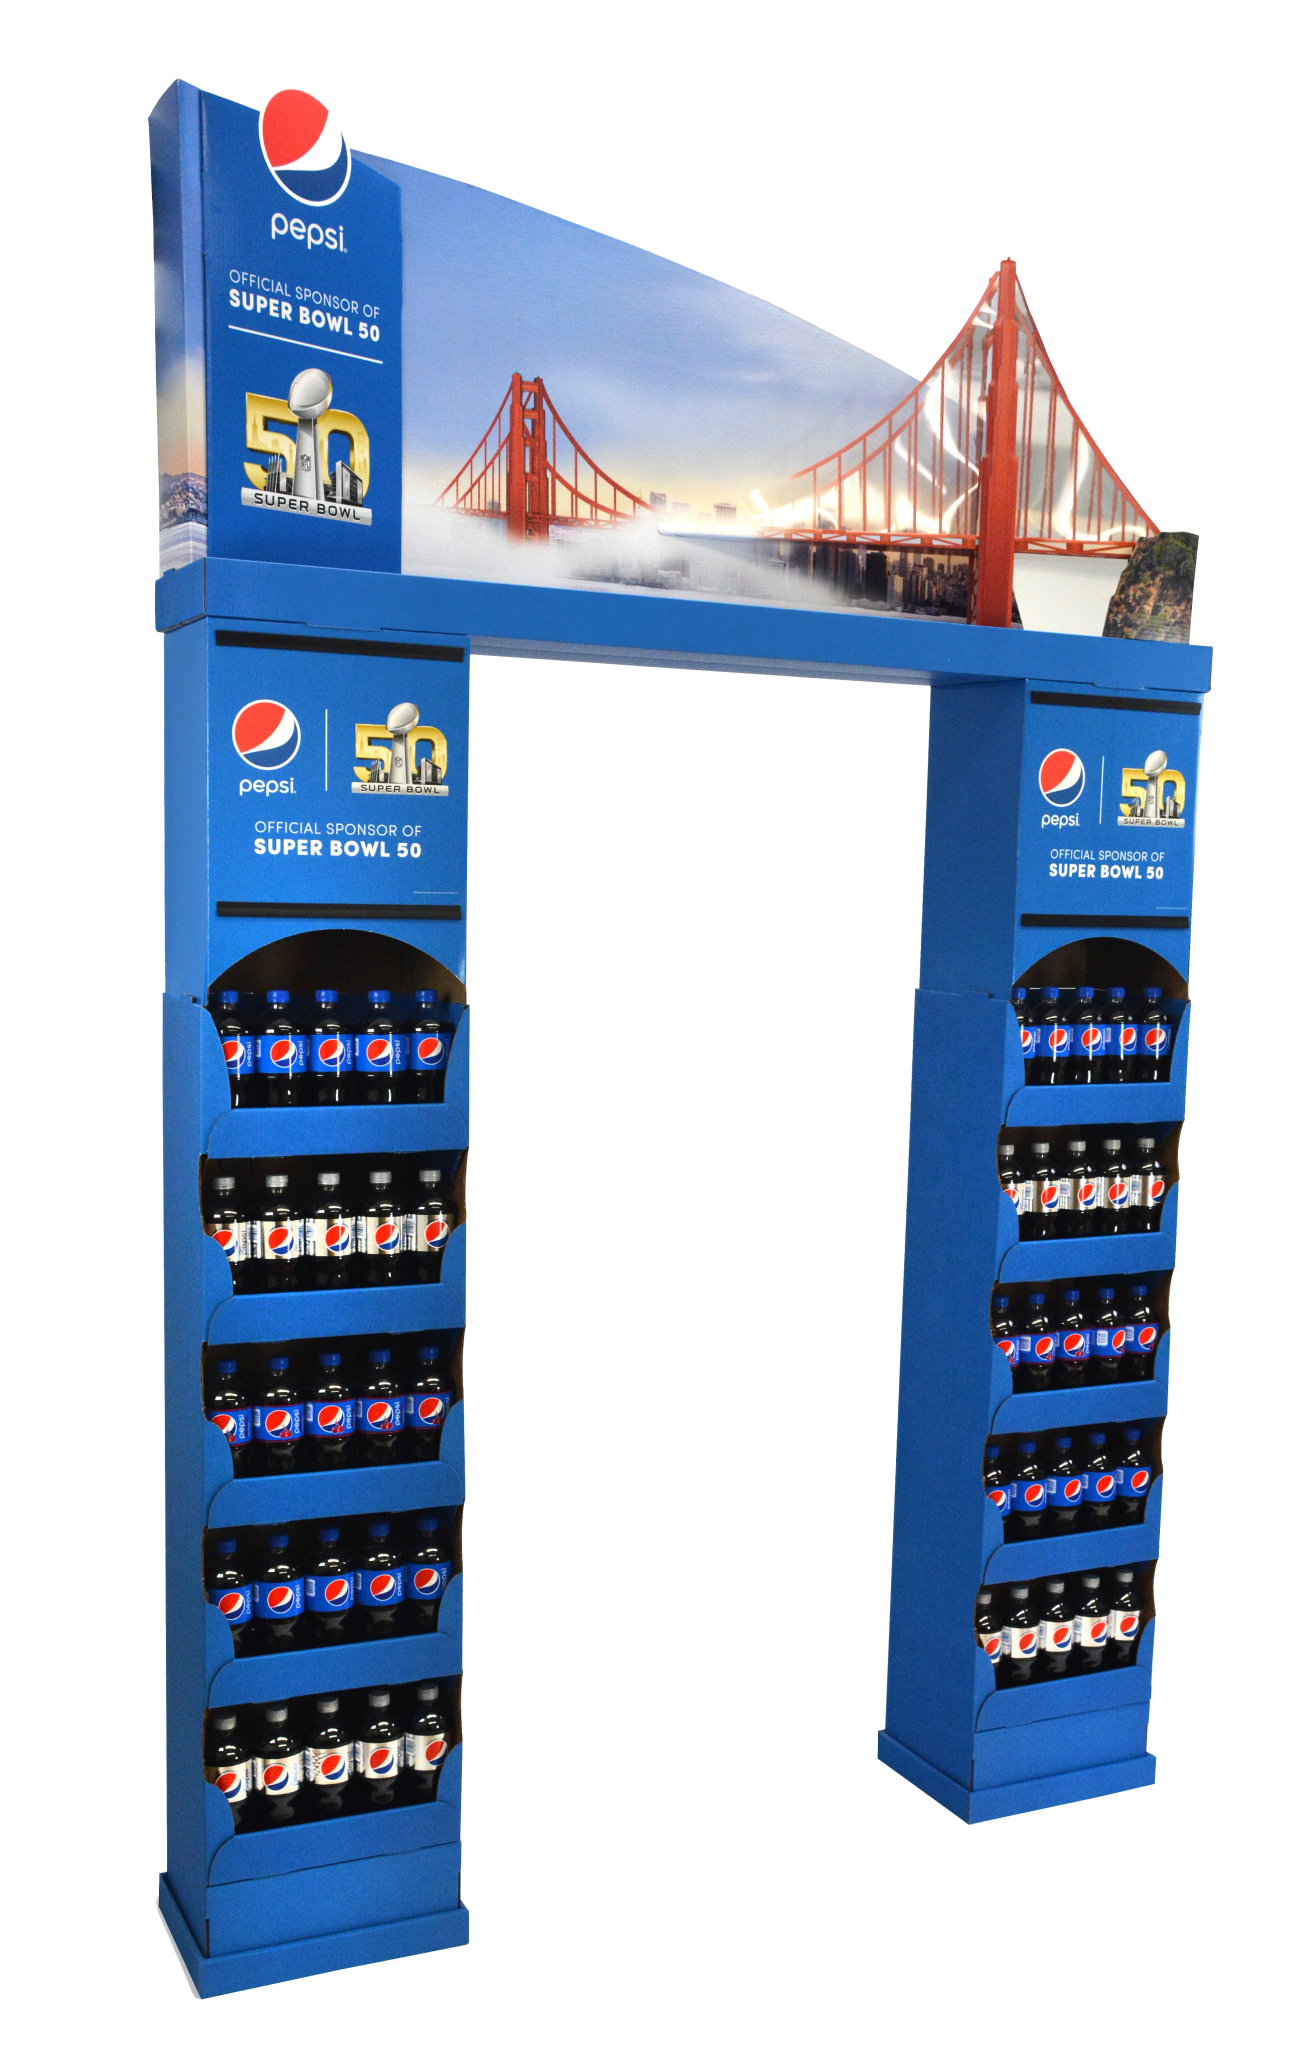 Pepsi super bowl bridge display